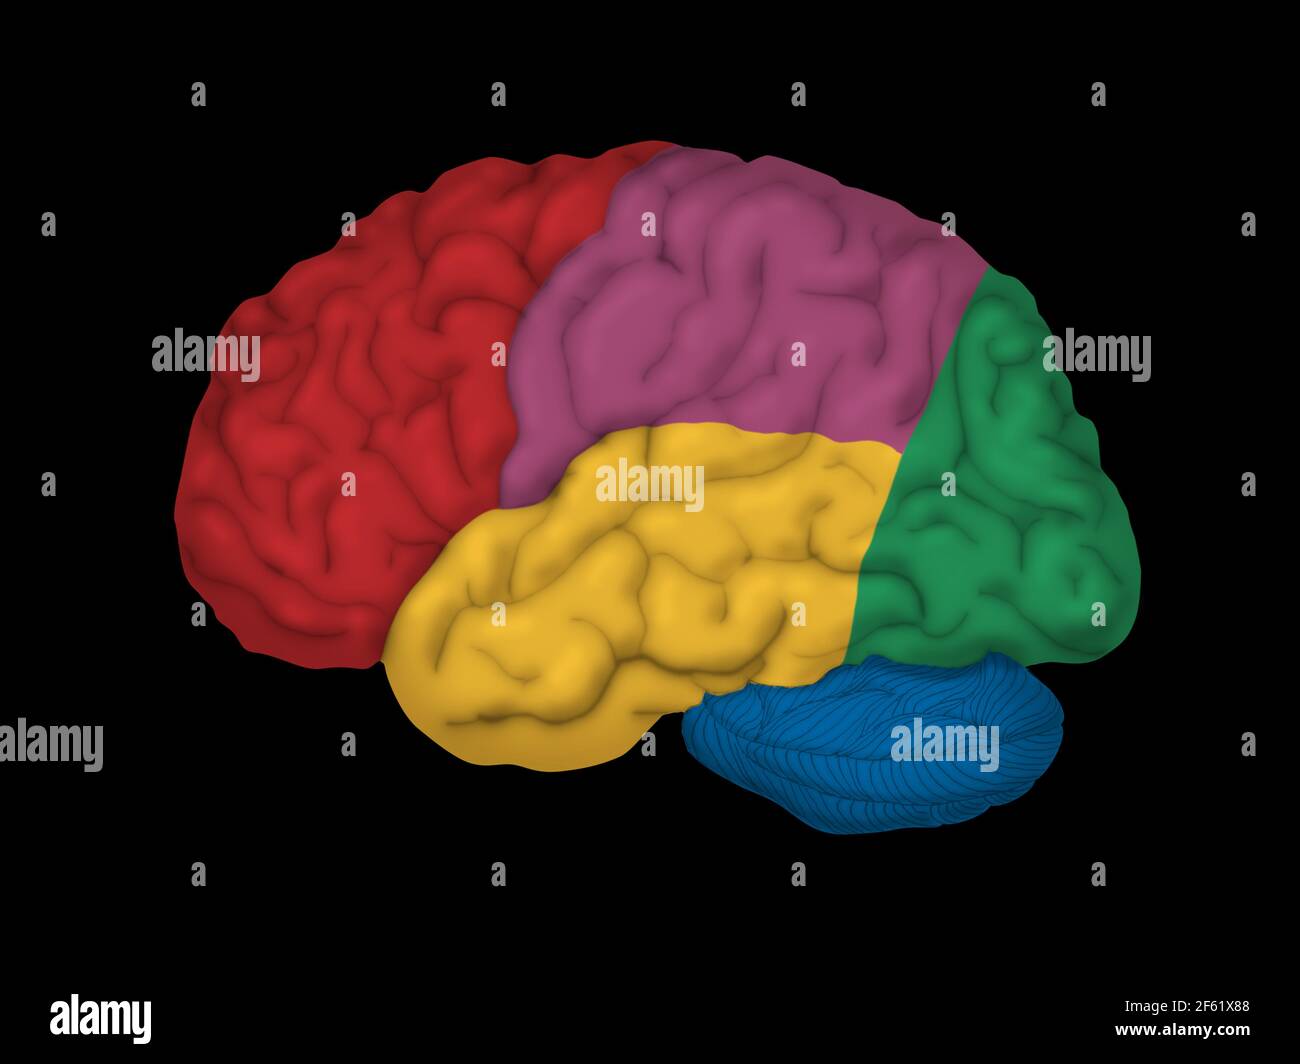 Cervello umano, vista laterale Foto Stock